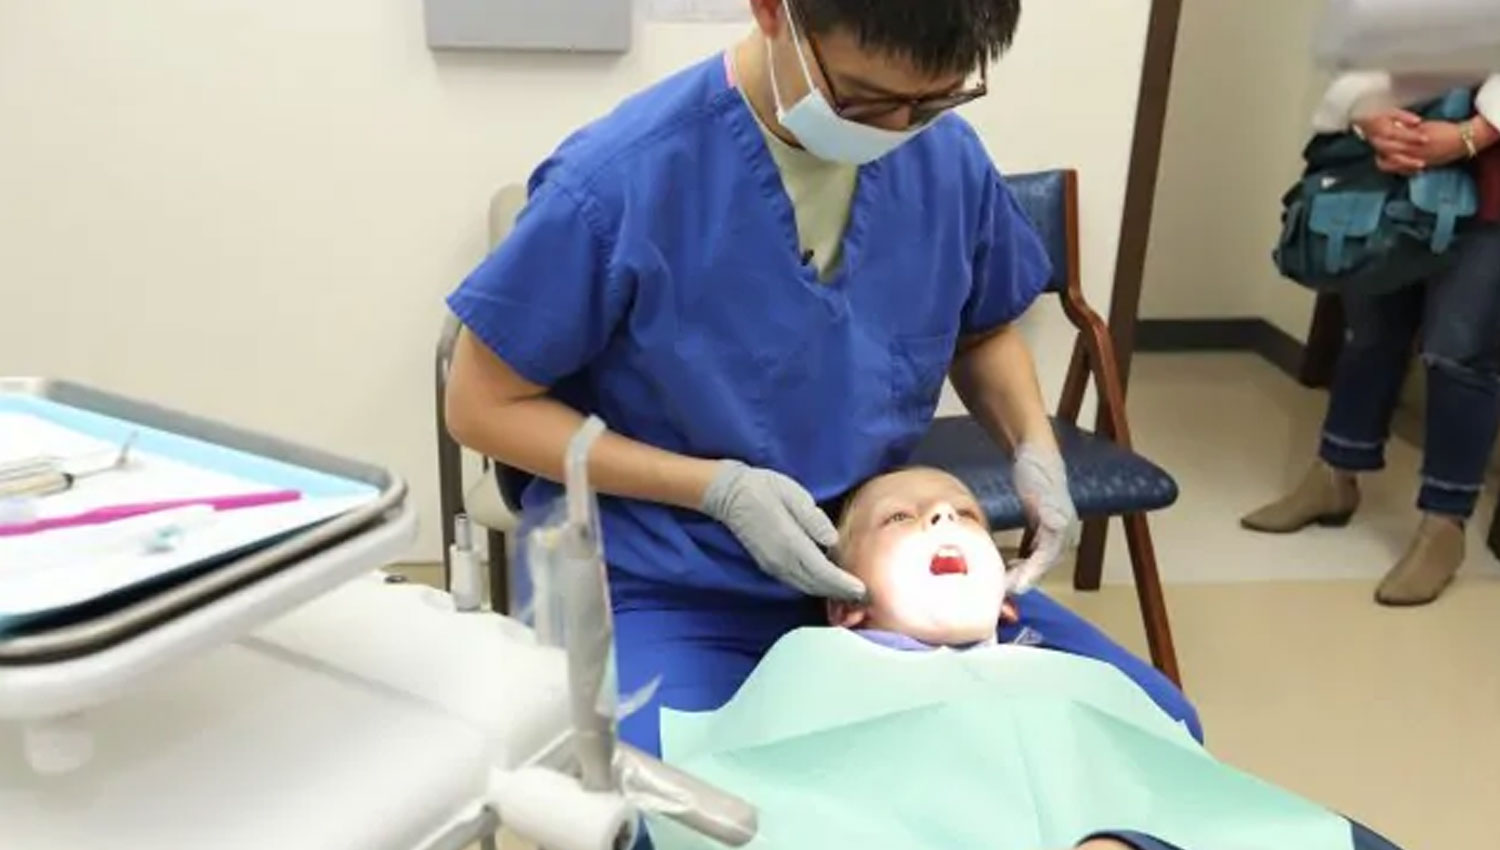 How Often Should Children Have Dental Checkups